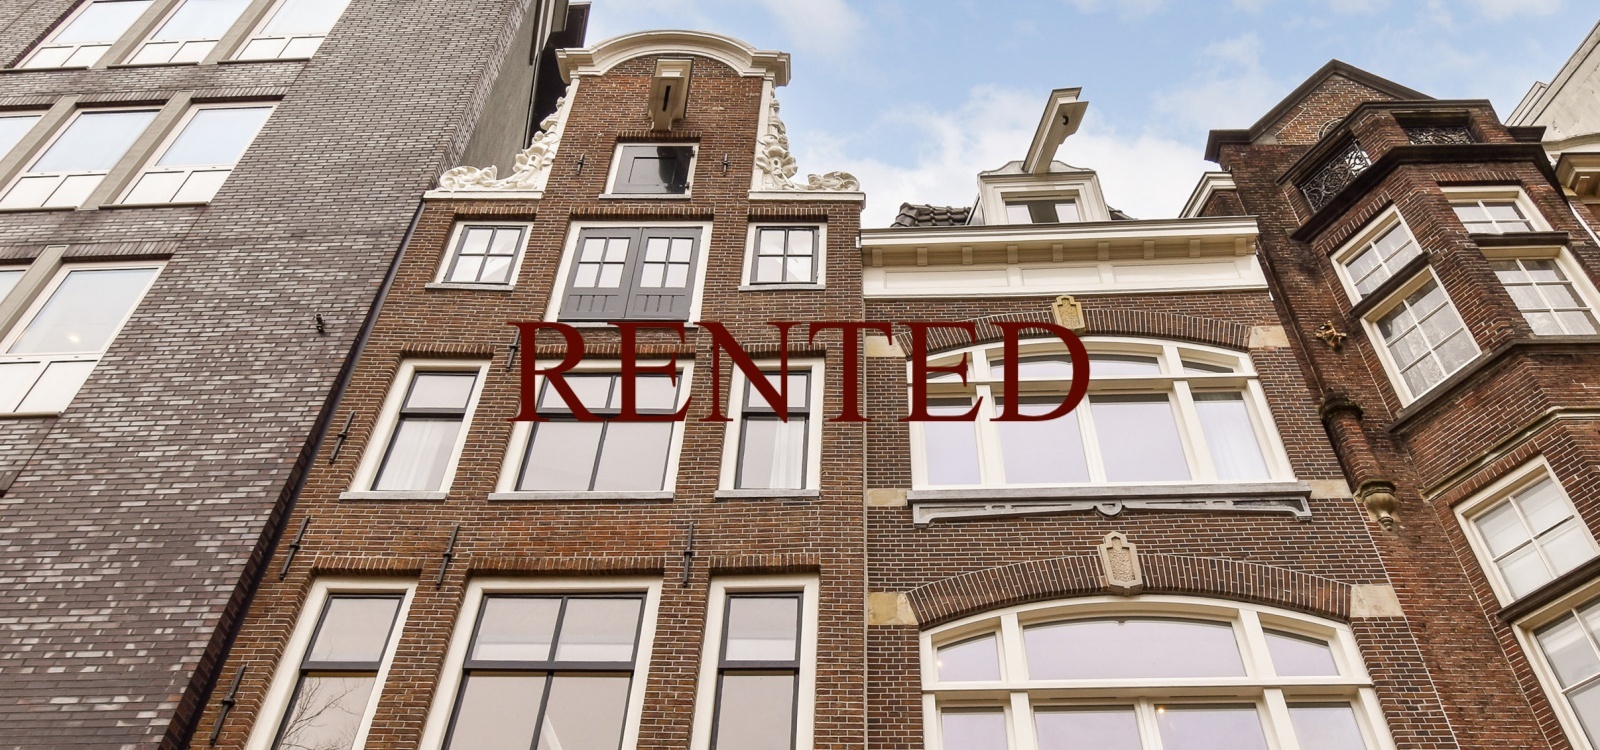 Nieuwezijds Voorburgwal,Netherlands 1012RL,2 Bedrooms Bedrooms,1 BathroomBathrooms,Apartment,Nieuwezijds Voorburgwal,3,1511